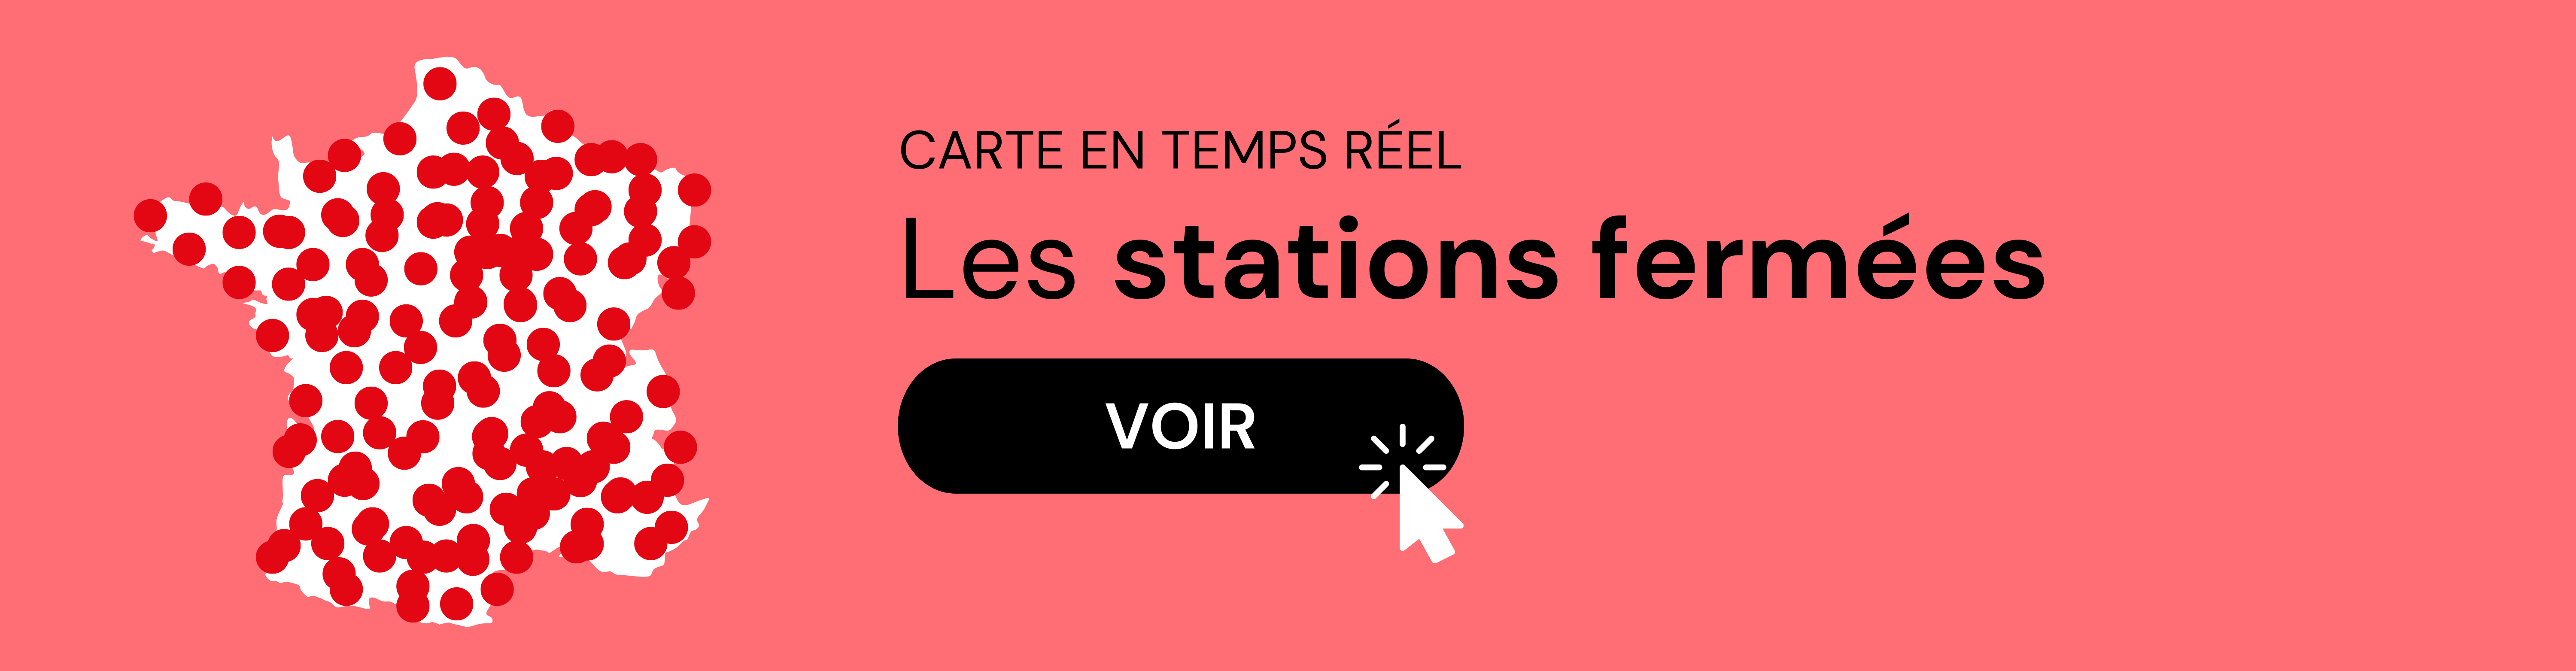 Carte des stations fermées en temps réel en France